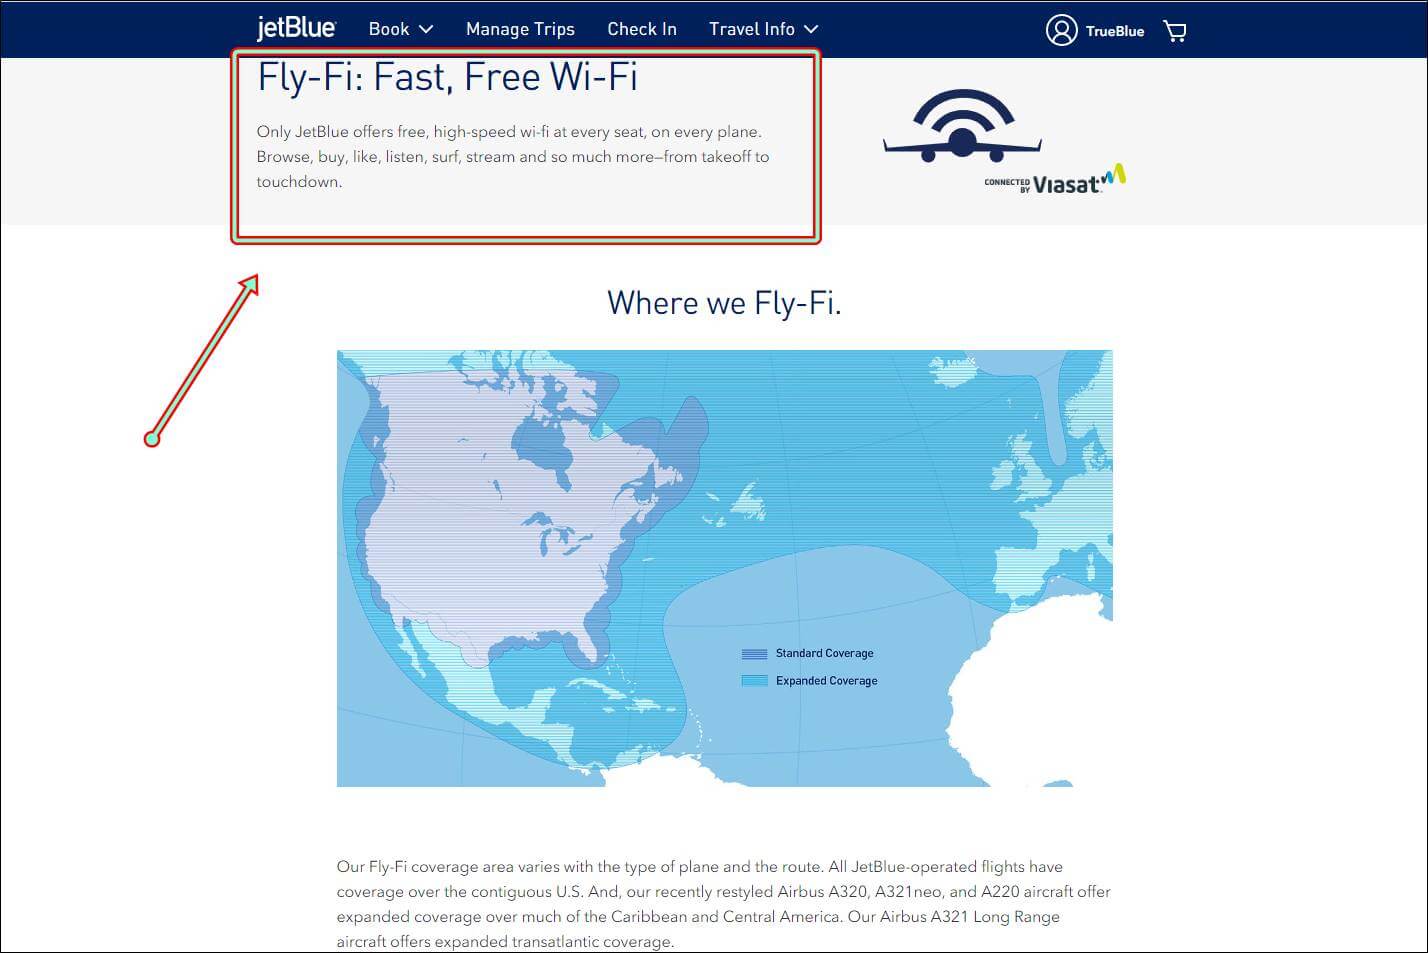 jetblue fly-fi fast free wifi internet onboard